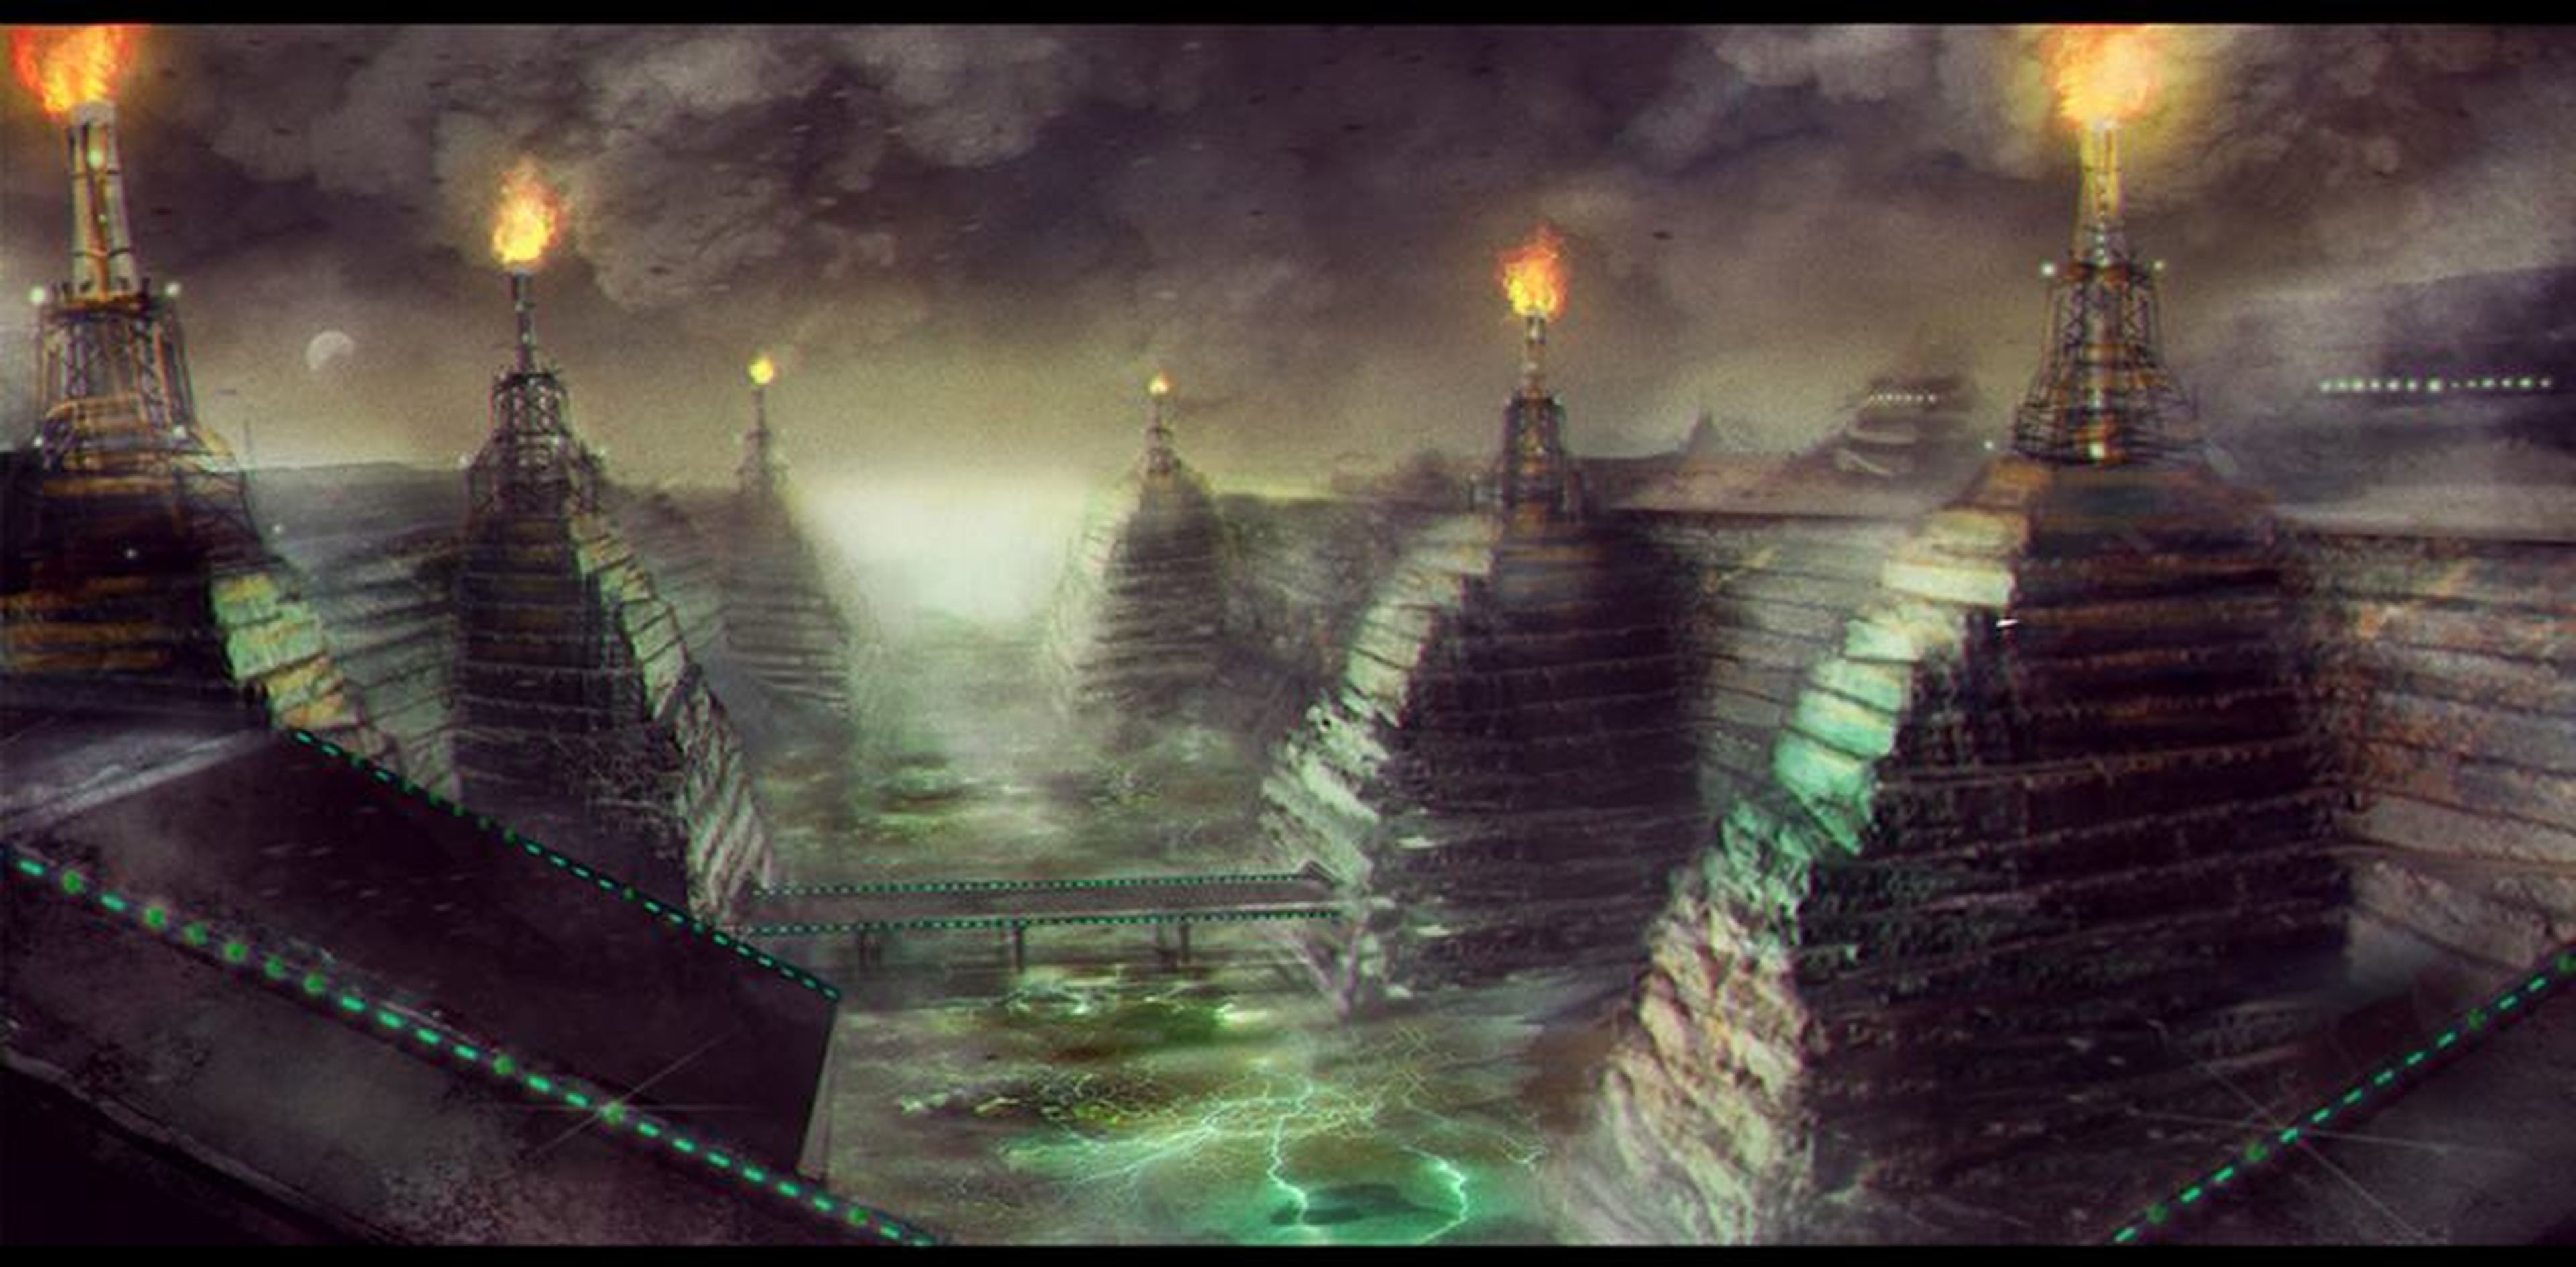 Las chimeneas de las fábricas contrastan con una arquitectura propia de los mayas o aztecas.